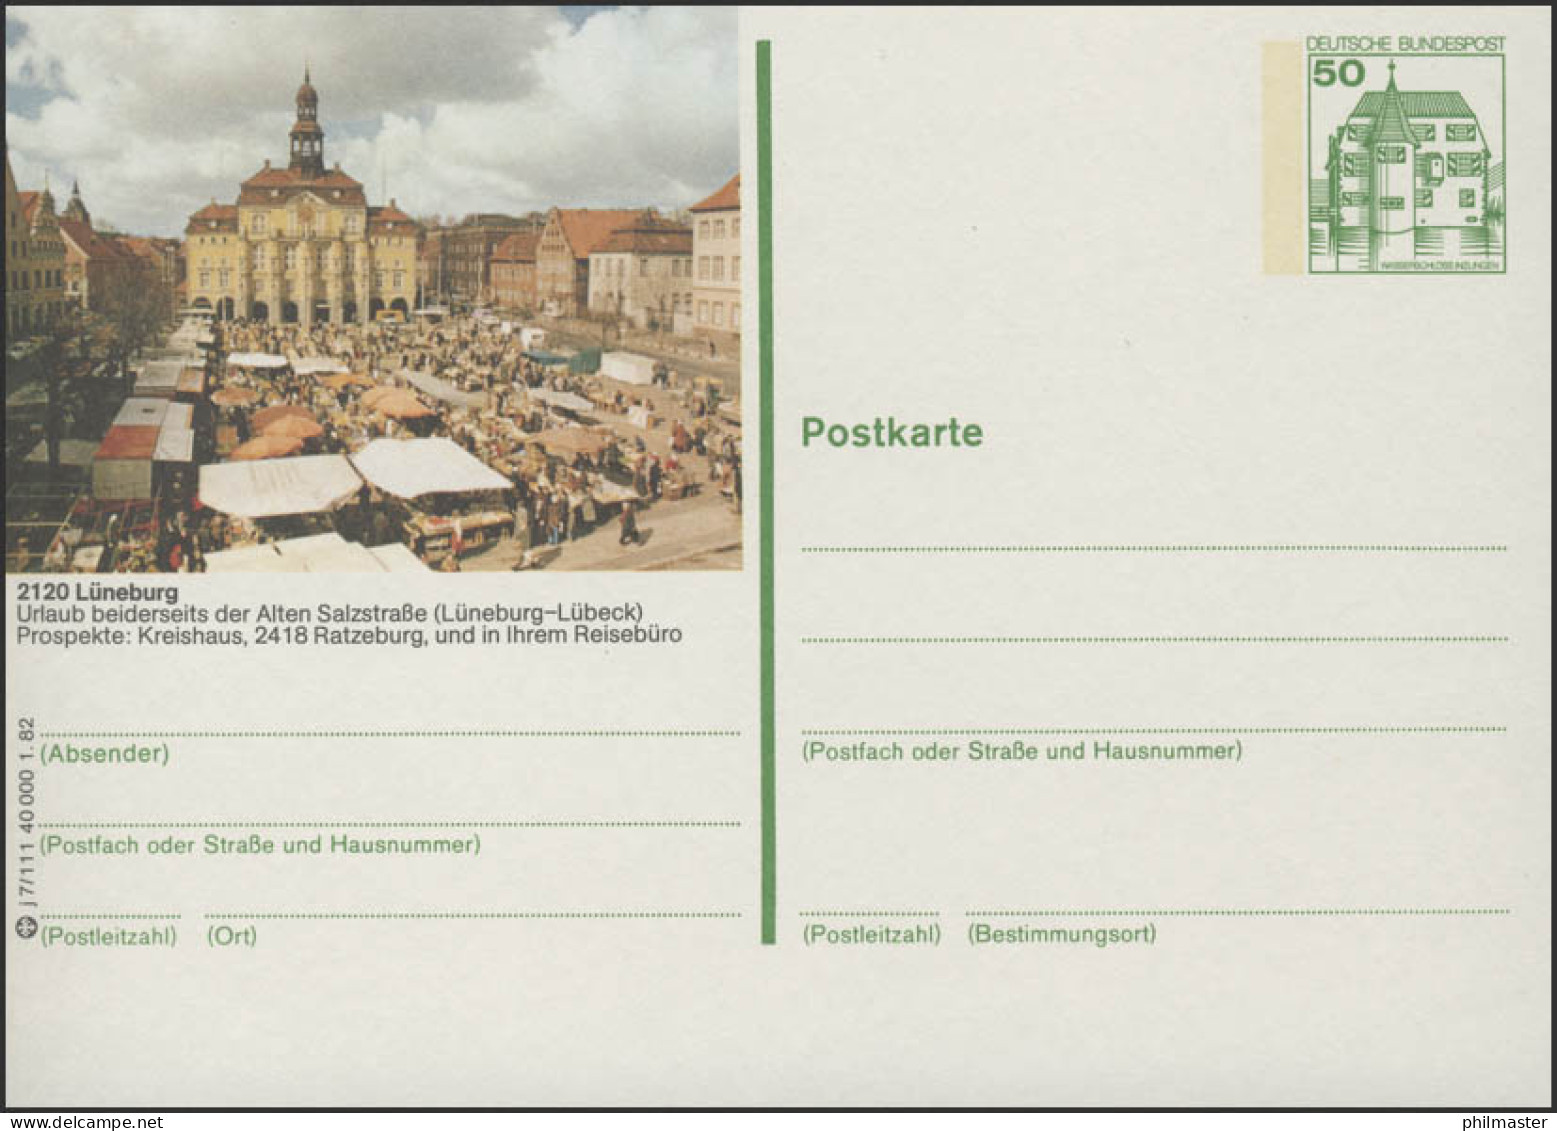 P134-j7/111 - 2120 Lüneburg, Rathaus Mit Wochenmarkt ** - Illustrated Postcards - Mint